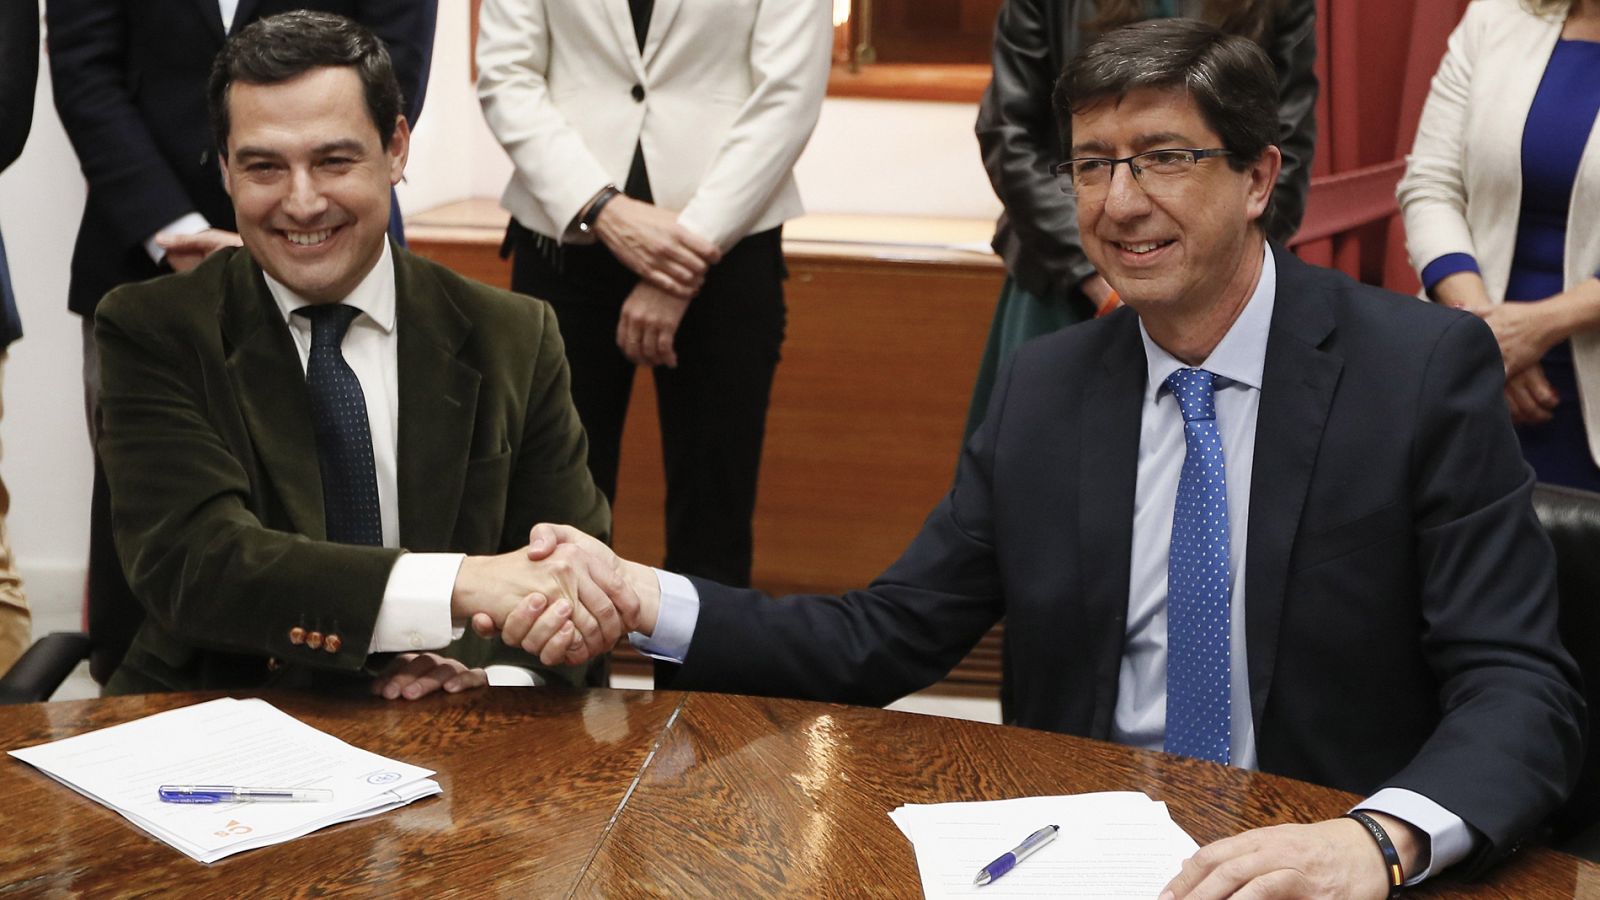 Los presidentes del PP y Ciudadanos en Andalucía, Juanma Moreno y Juan Marín en el momento de la firma del pacto de Gobierno (foto archivo)